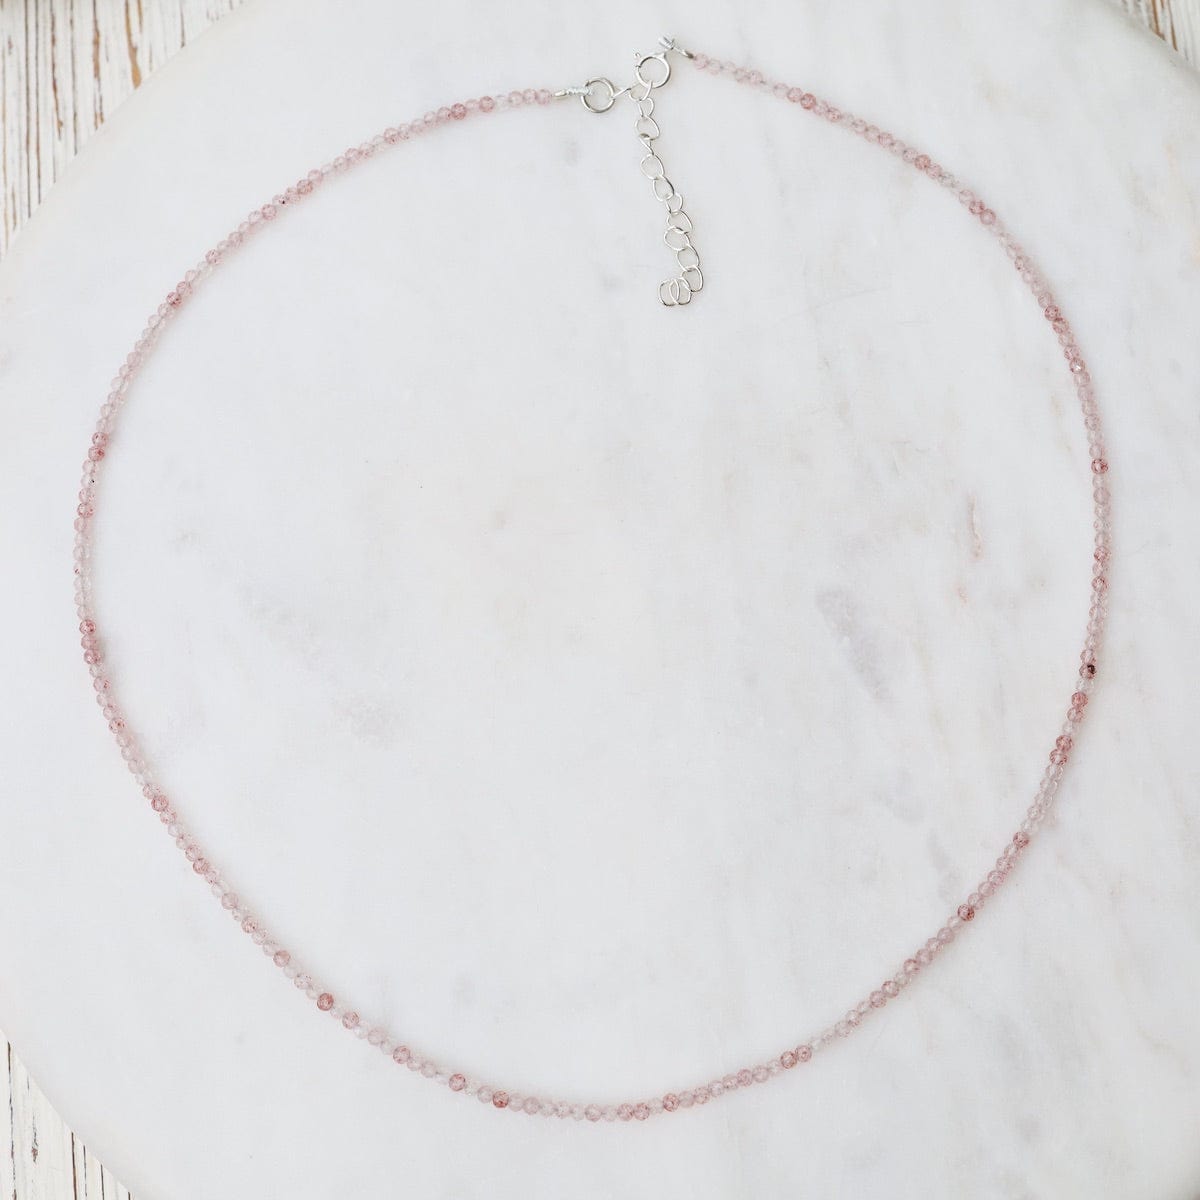 NKL Simple Stone Necklace - Cherry Quartz